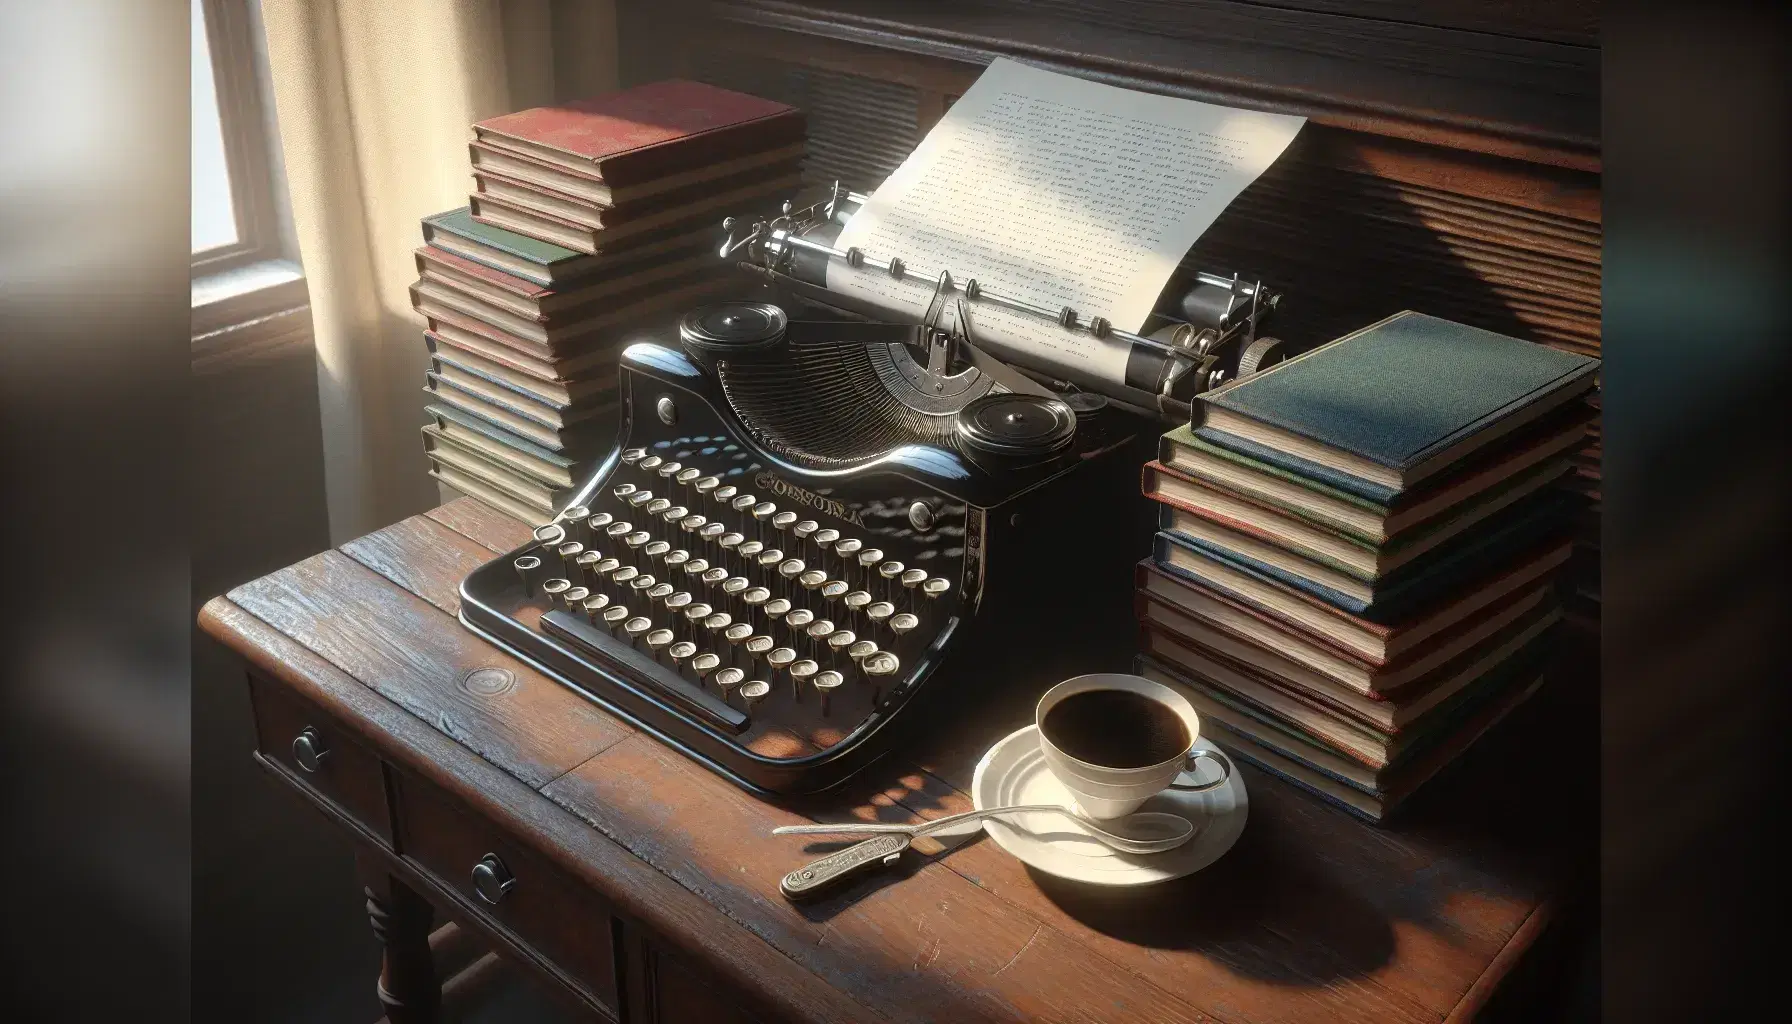 Scrivania in legno scuro con macchina da scrivere antica, fogli bianchi, libri rilegati, caffè fumante e pianta verde sullo sfondo.